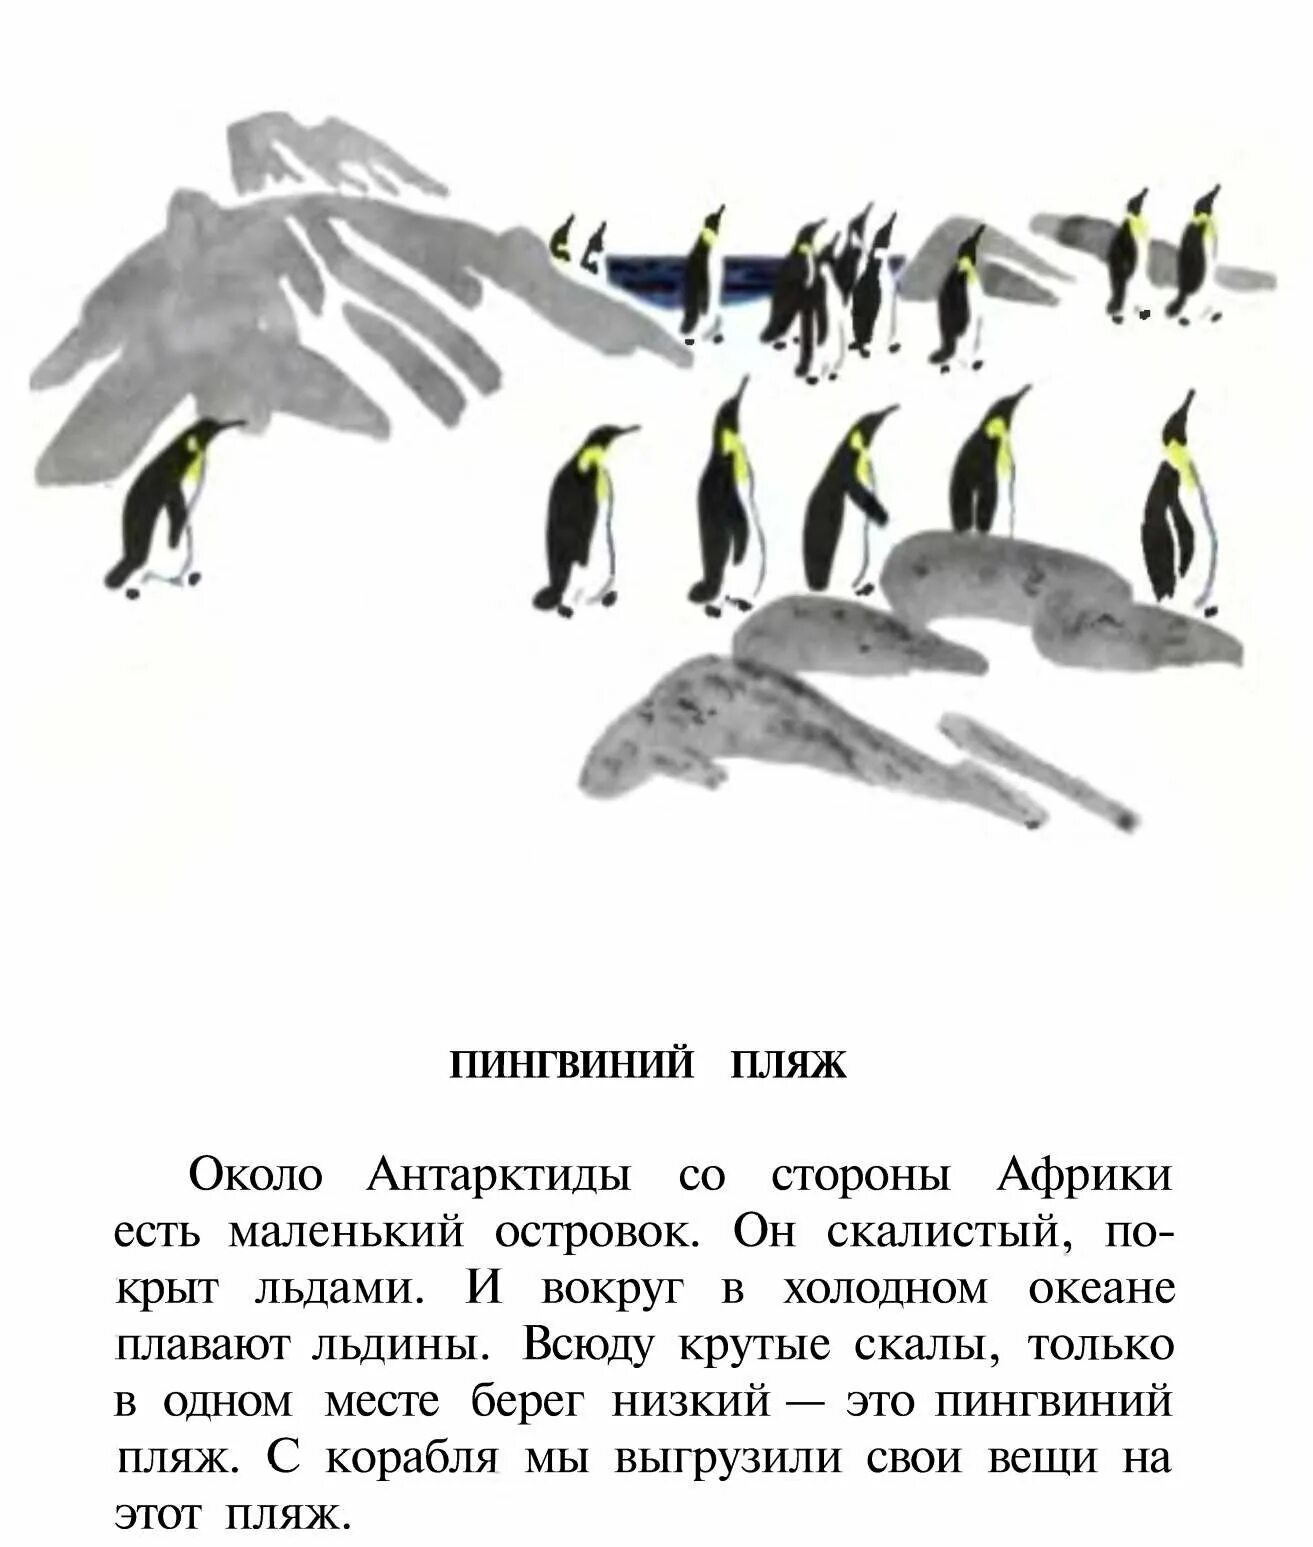 Рассказ про пингвинов Снегирев. Г Снегирева про пингвинов рассказ. Чтение рассказа Снегирева Пингвиний пляж. Пересказ рассказа г снегирева про пингвинов